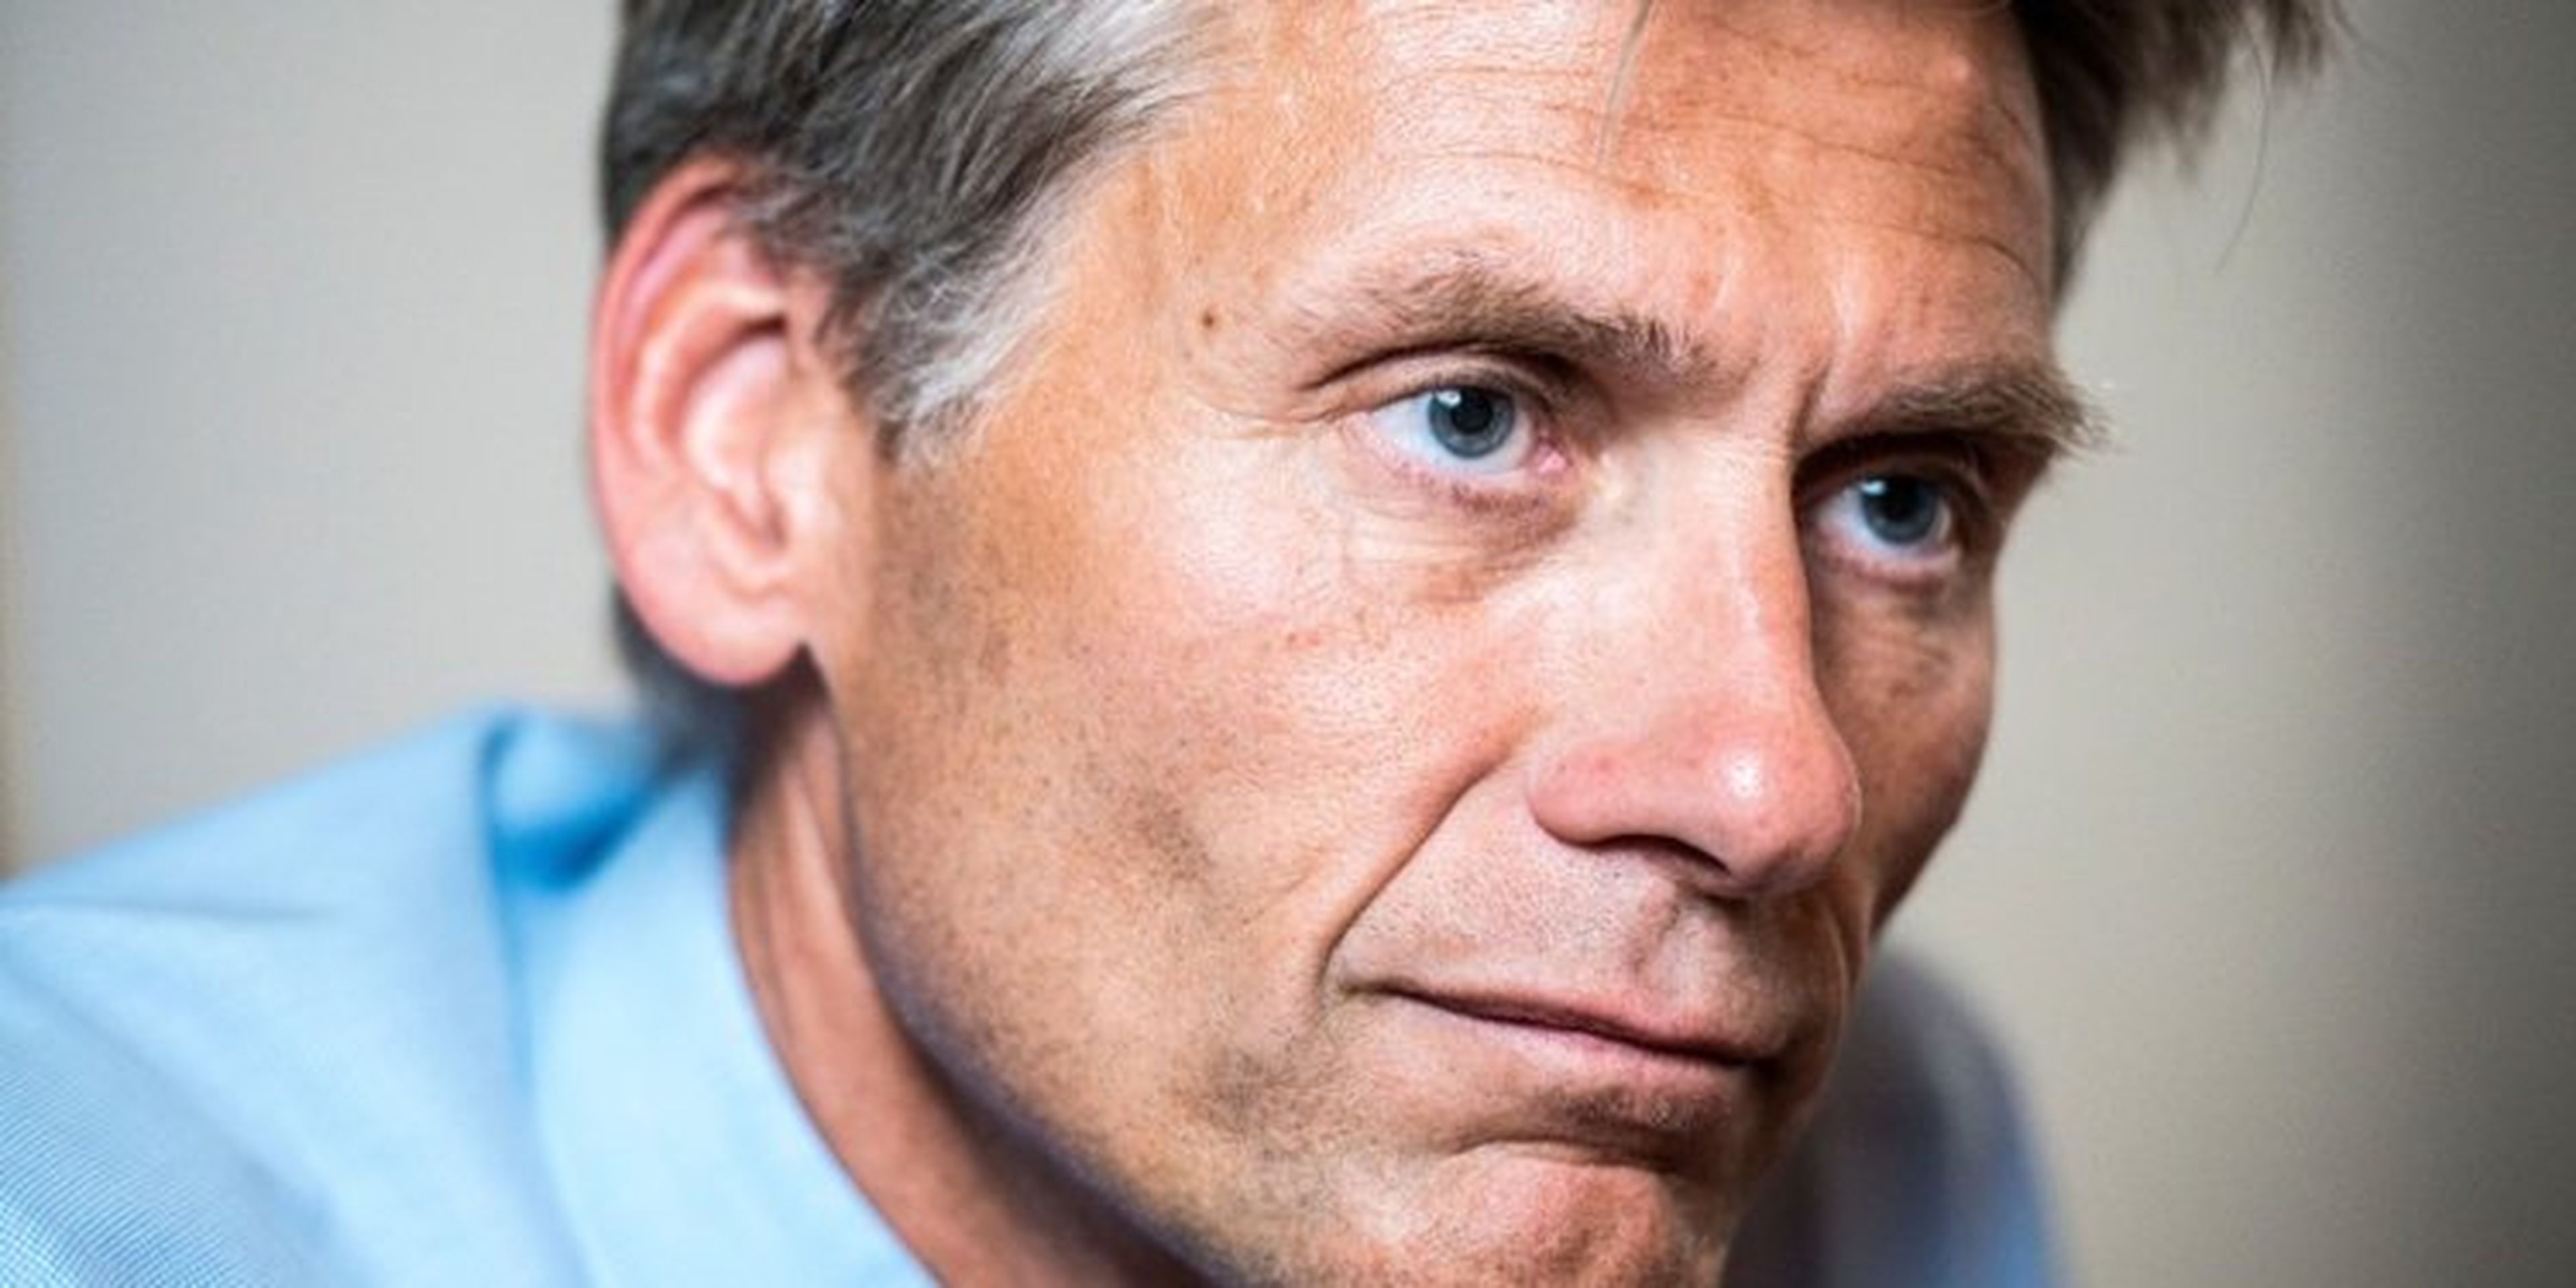 [RE] Thomas Borgen acaba de dimitir como CEO de Danske Bank